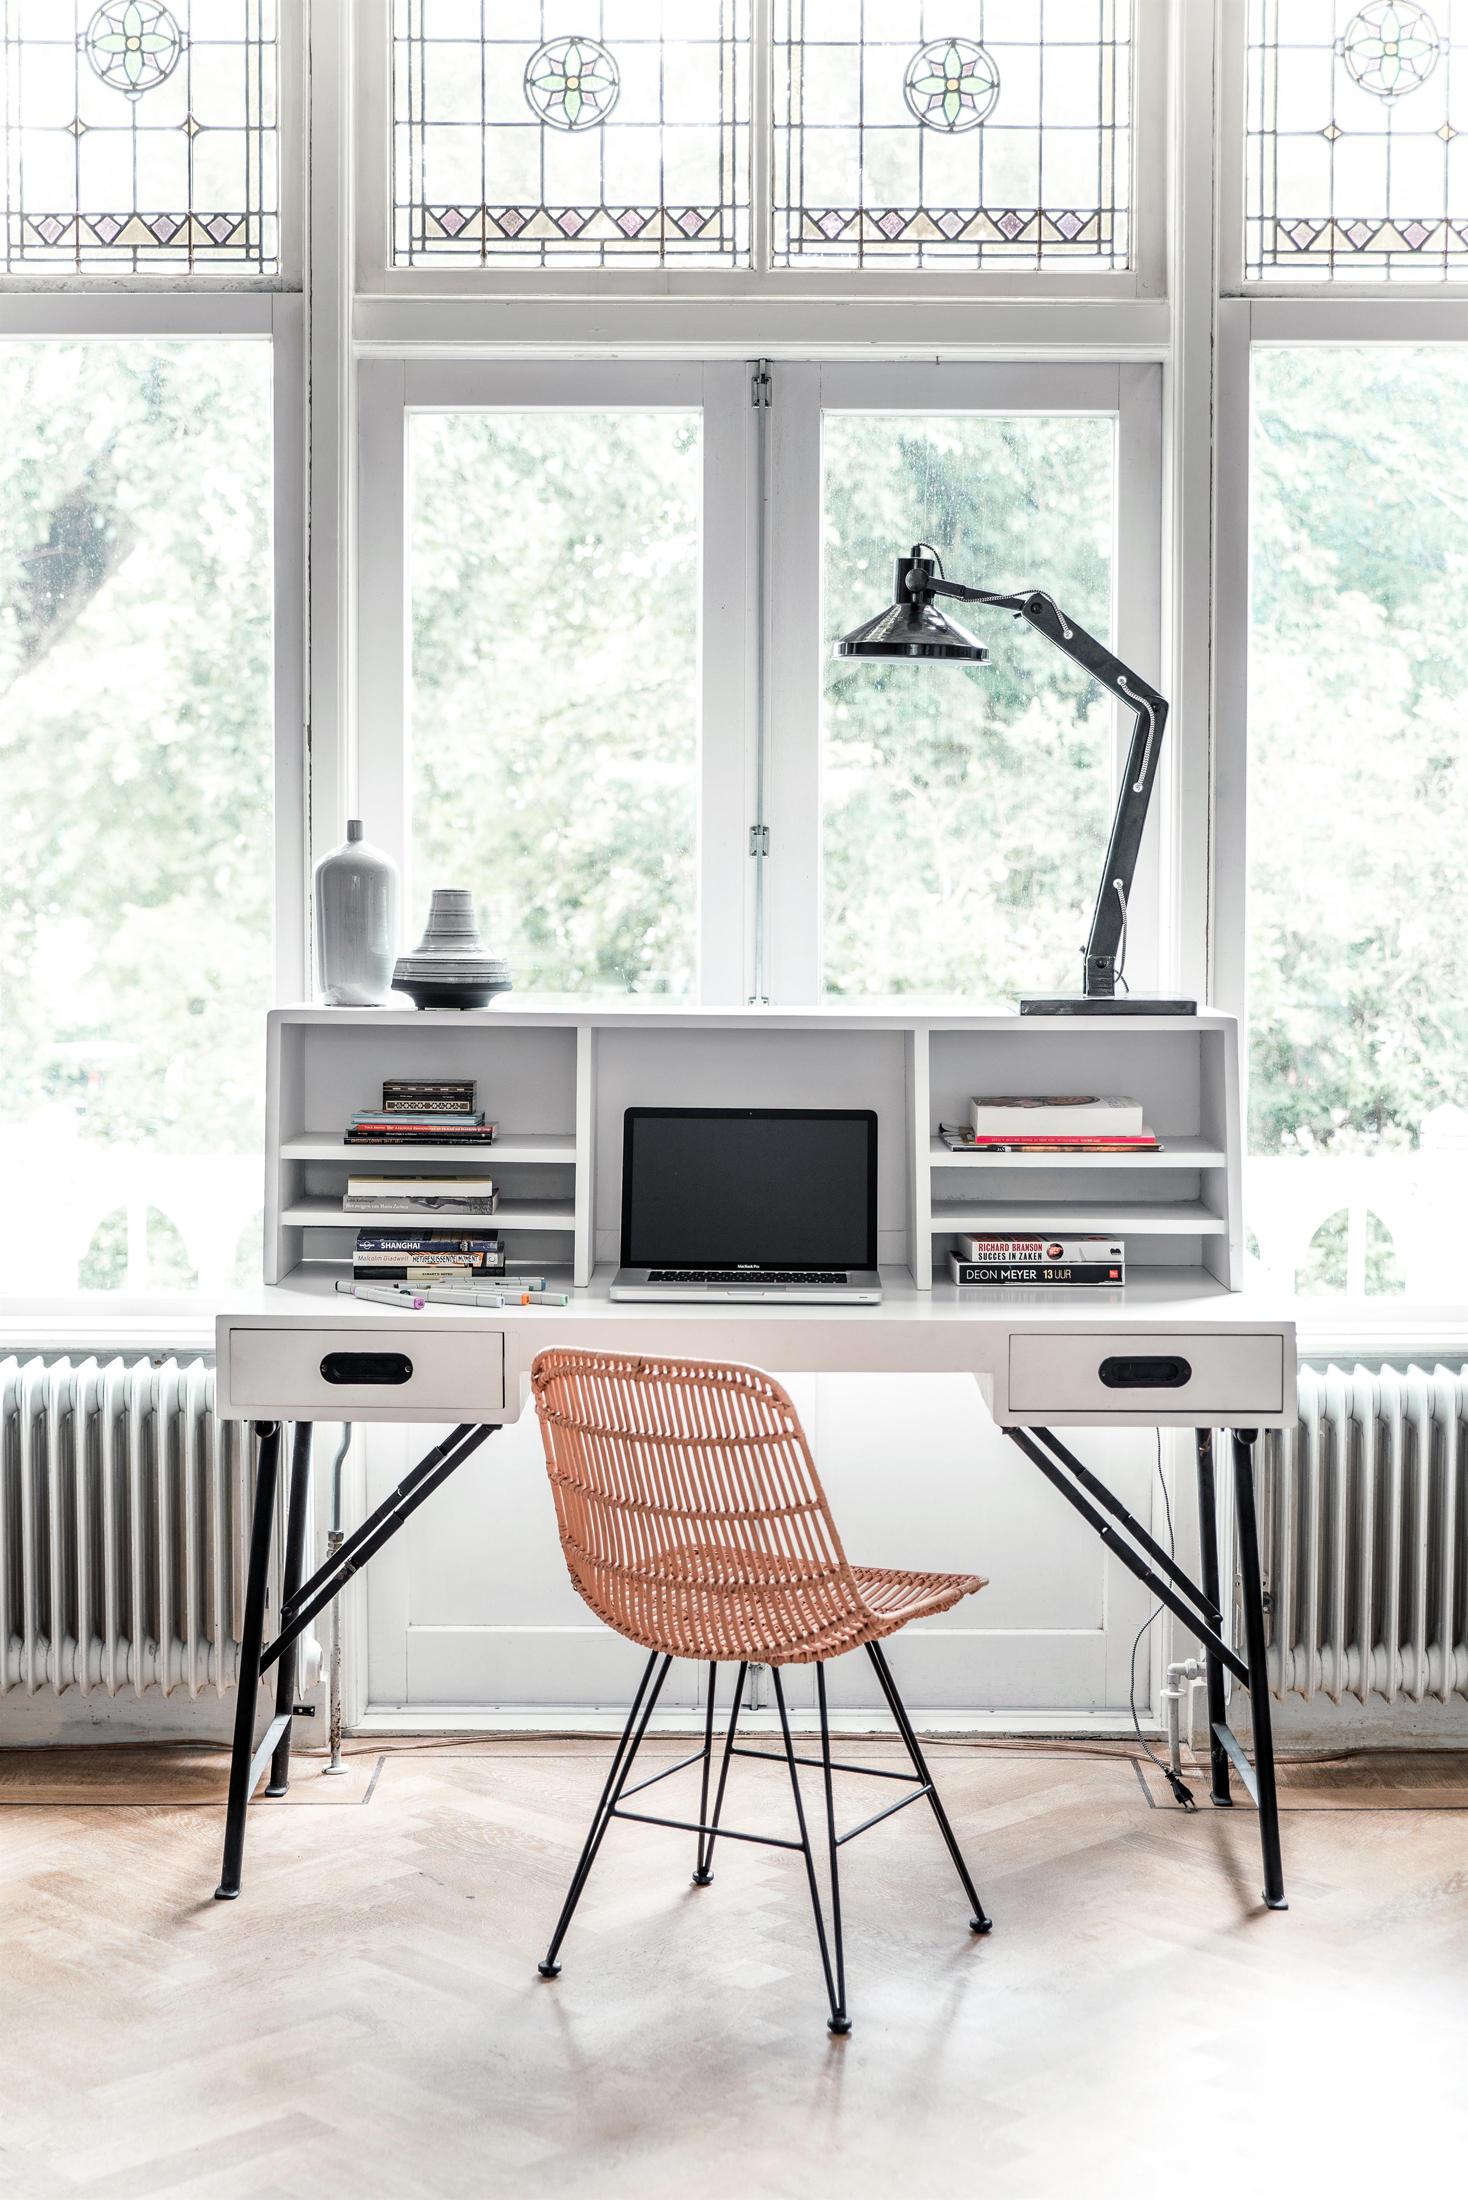 Weißer Schreibtisch mit Ablage #schreibtisch #schreibtischstuhl #schreibtischablage ©HK living